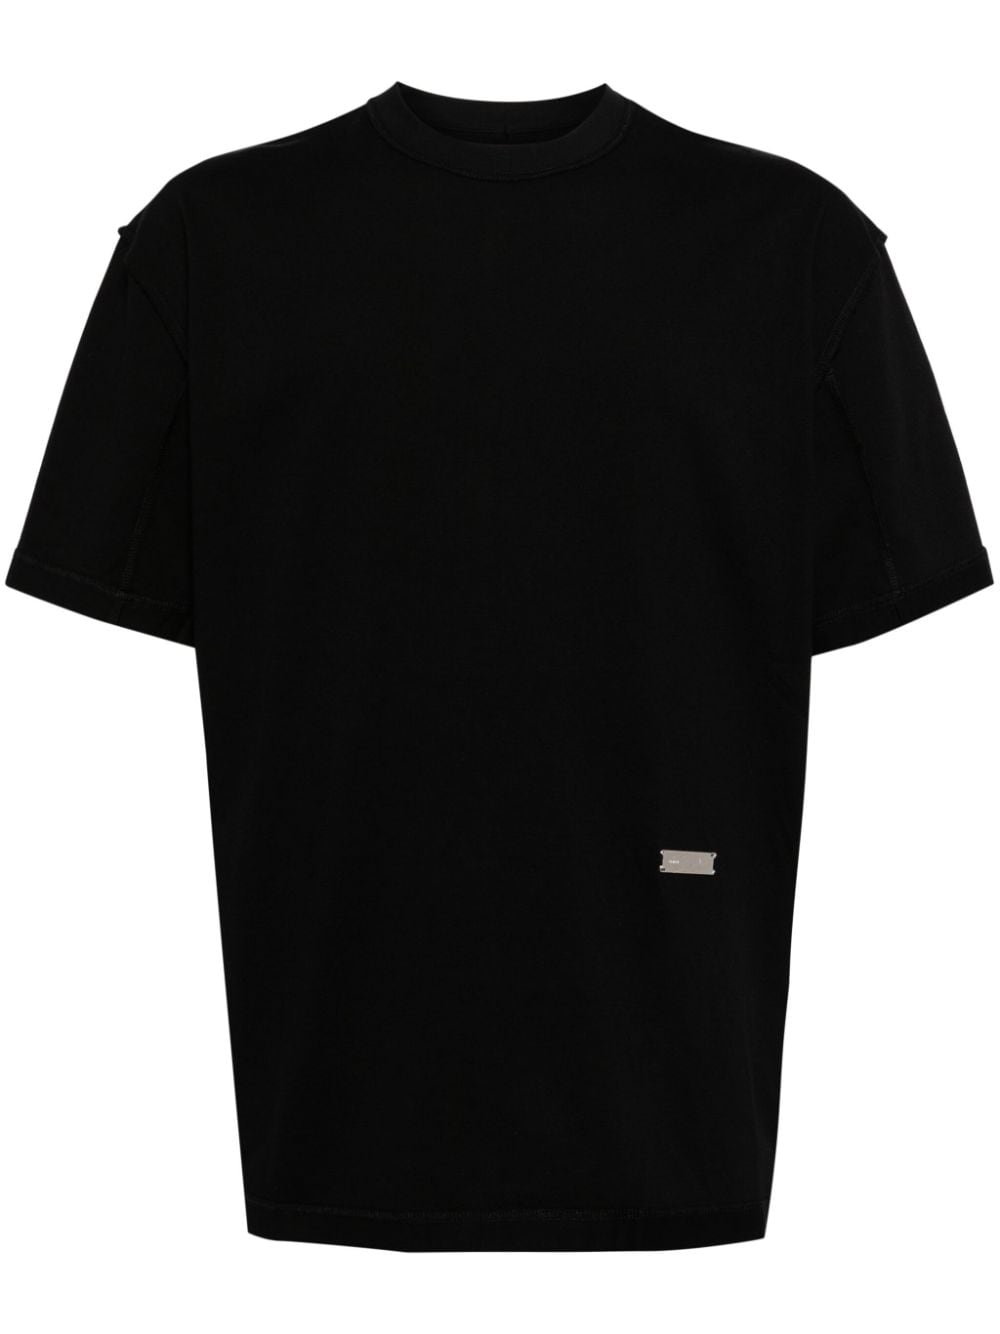 C2h4 Inside-Out cotton T-shirt - BLACK